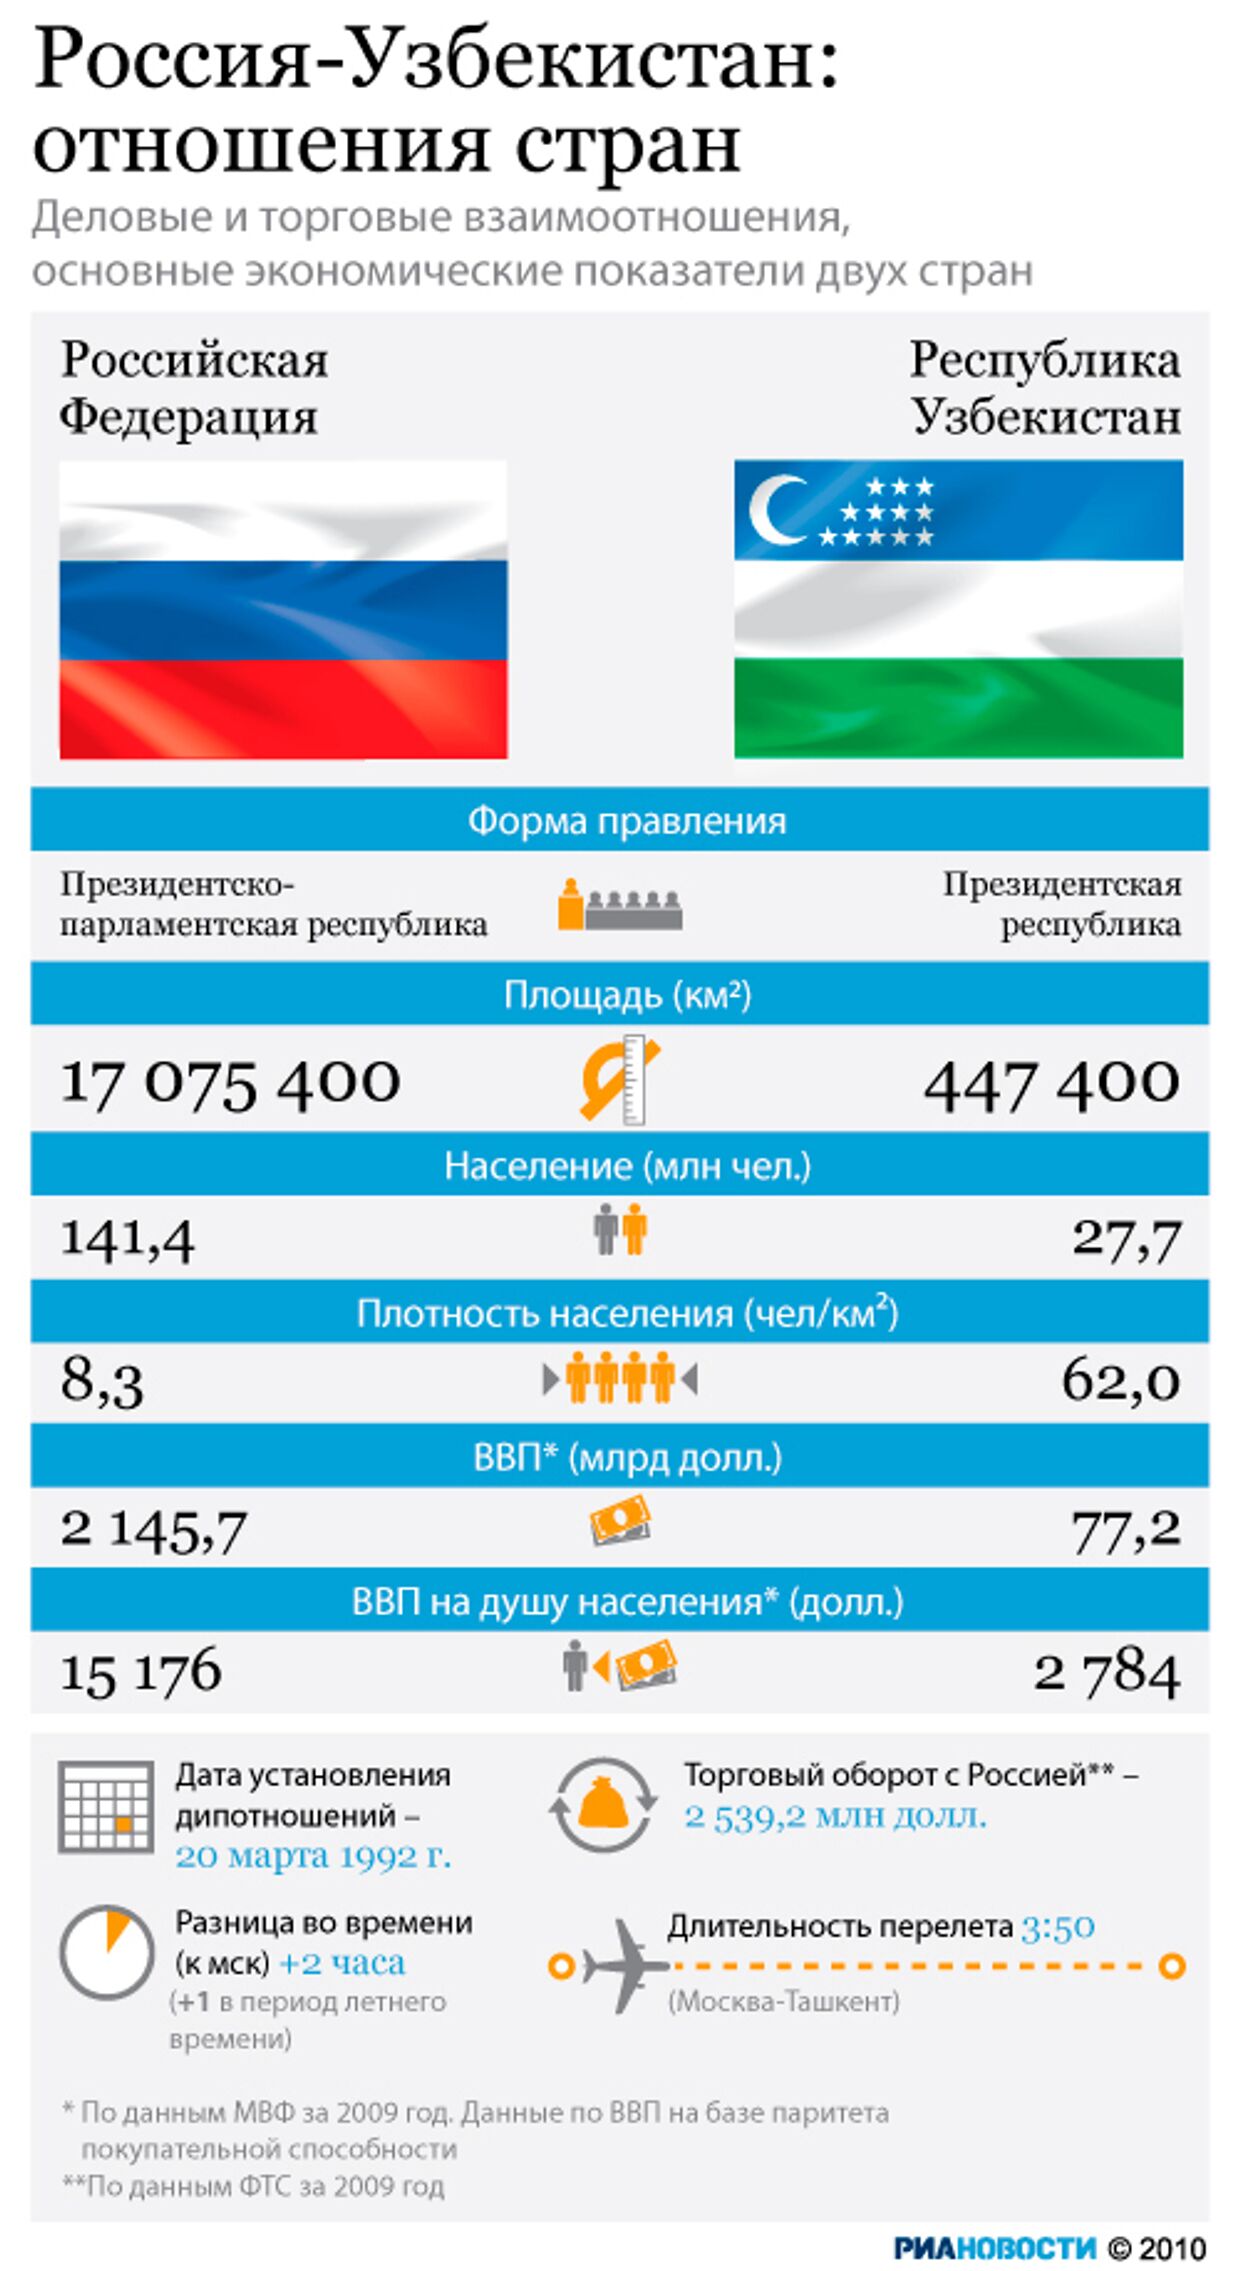 Россия-Узбекистан: отношения стран